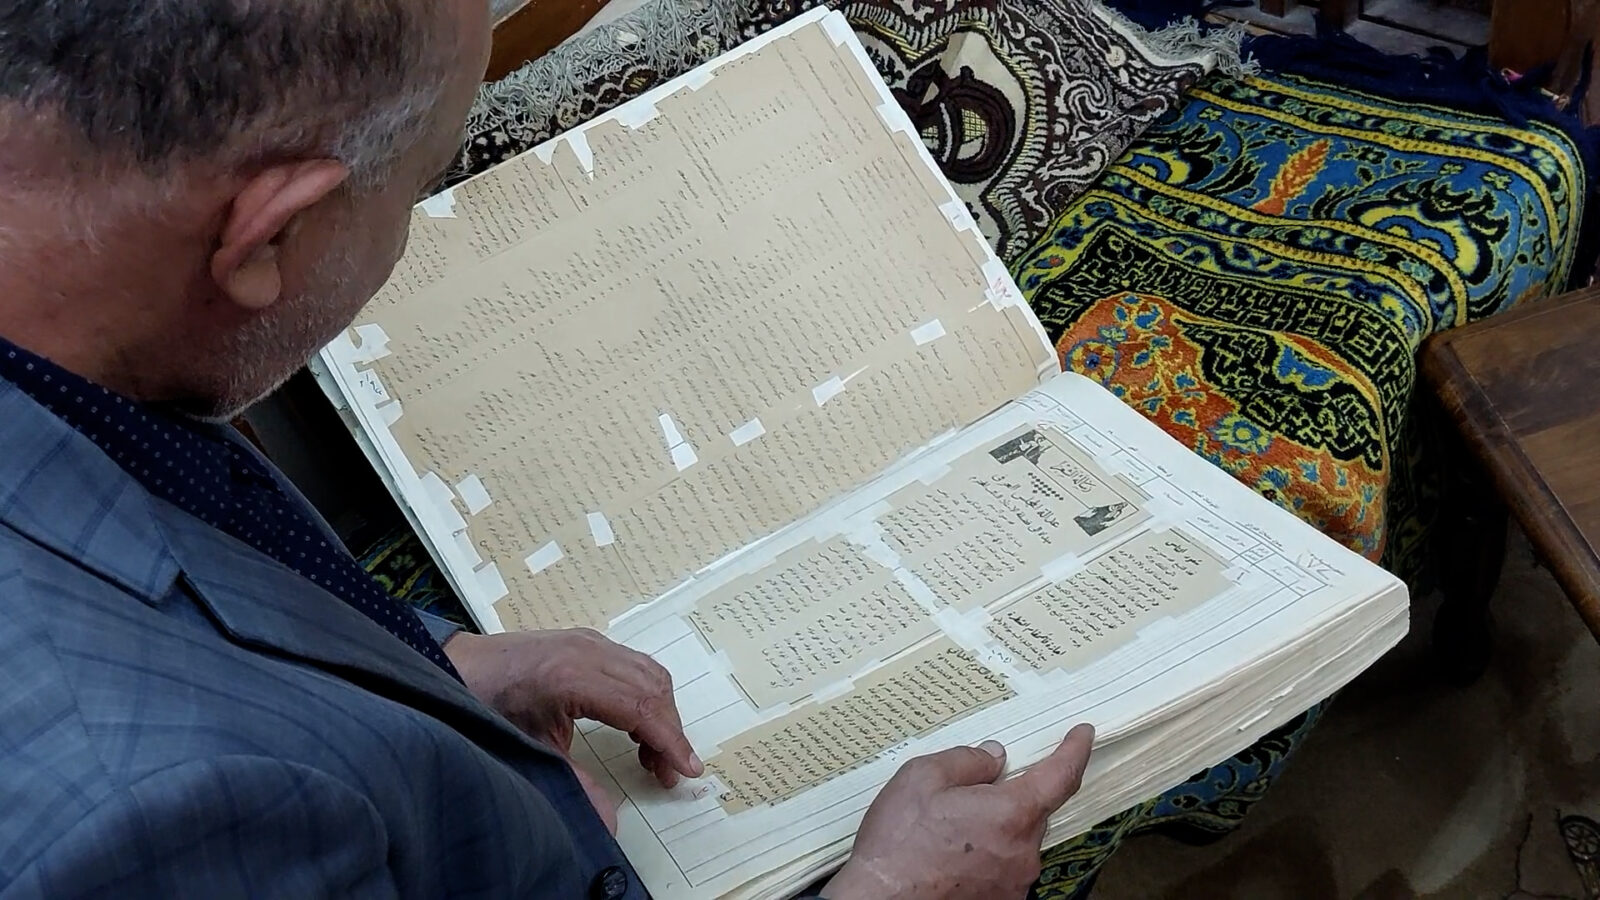 برقيات تسليح الجهاد ضد الإنكليز مع 3 آلاف كتاب ووثيقة في ديوان آل حيدر (فيديو)